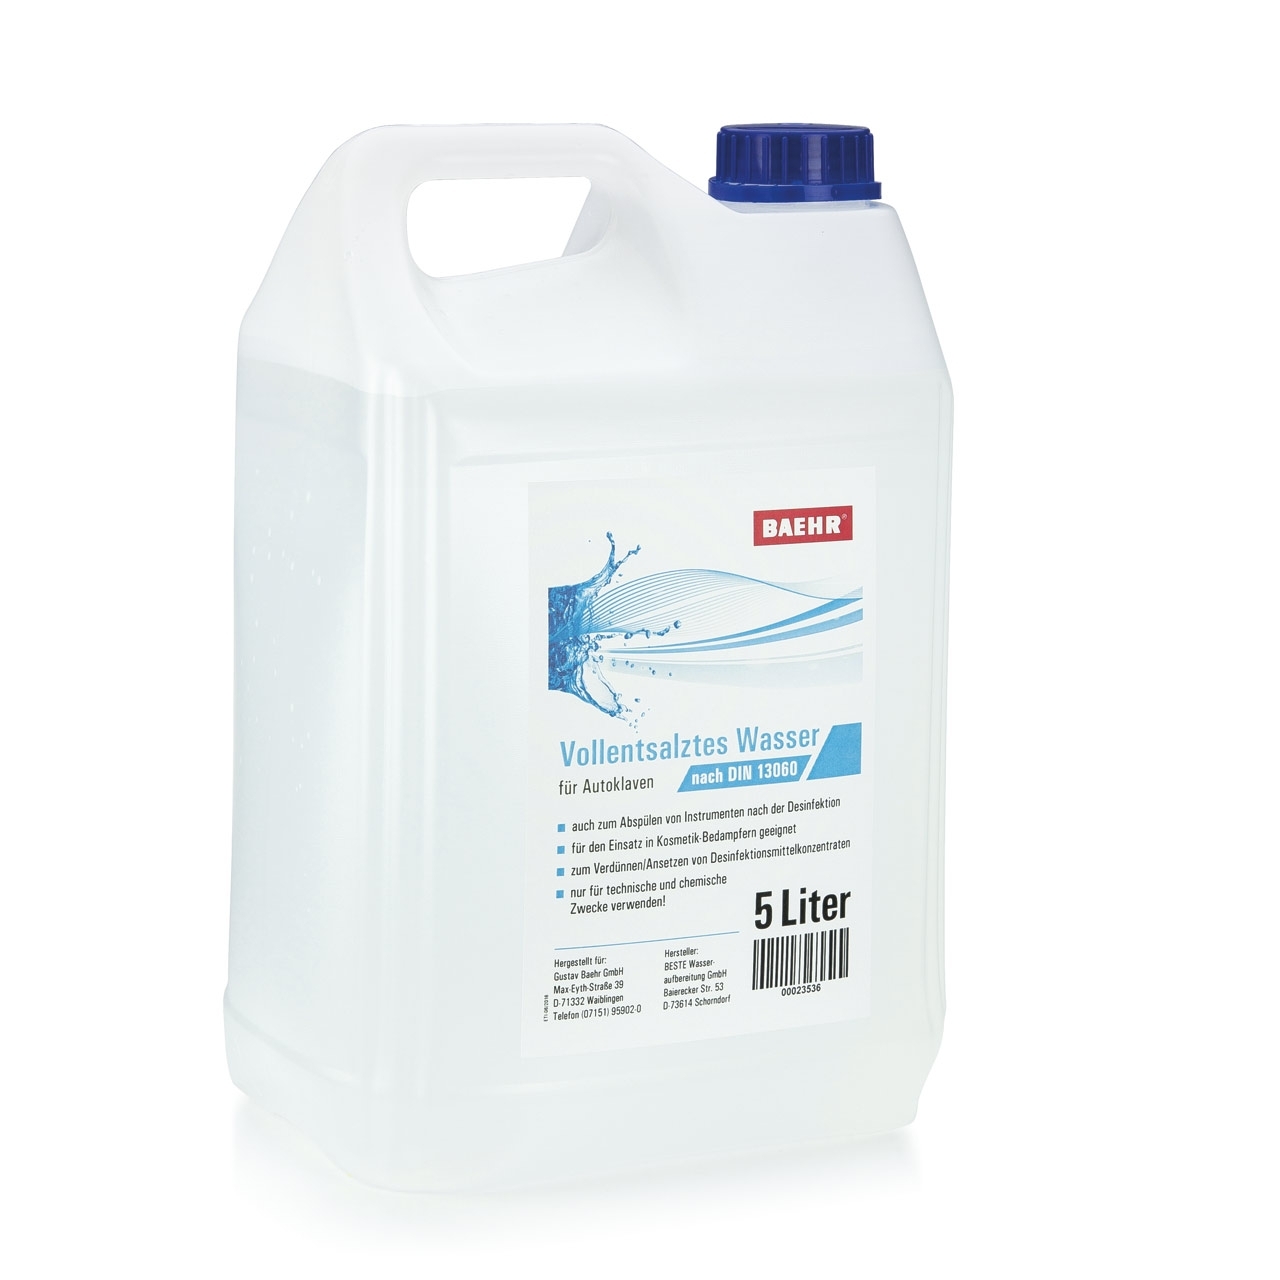 BAEHR Vollentsalztes Wasser nach DIN 13060 für Autoklaven, 5000 ml